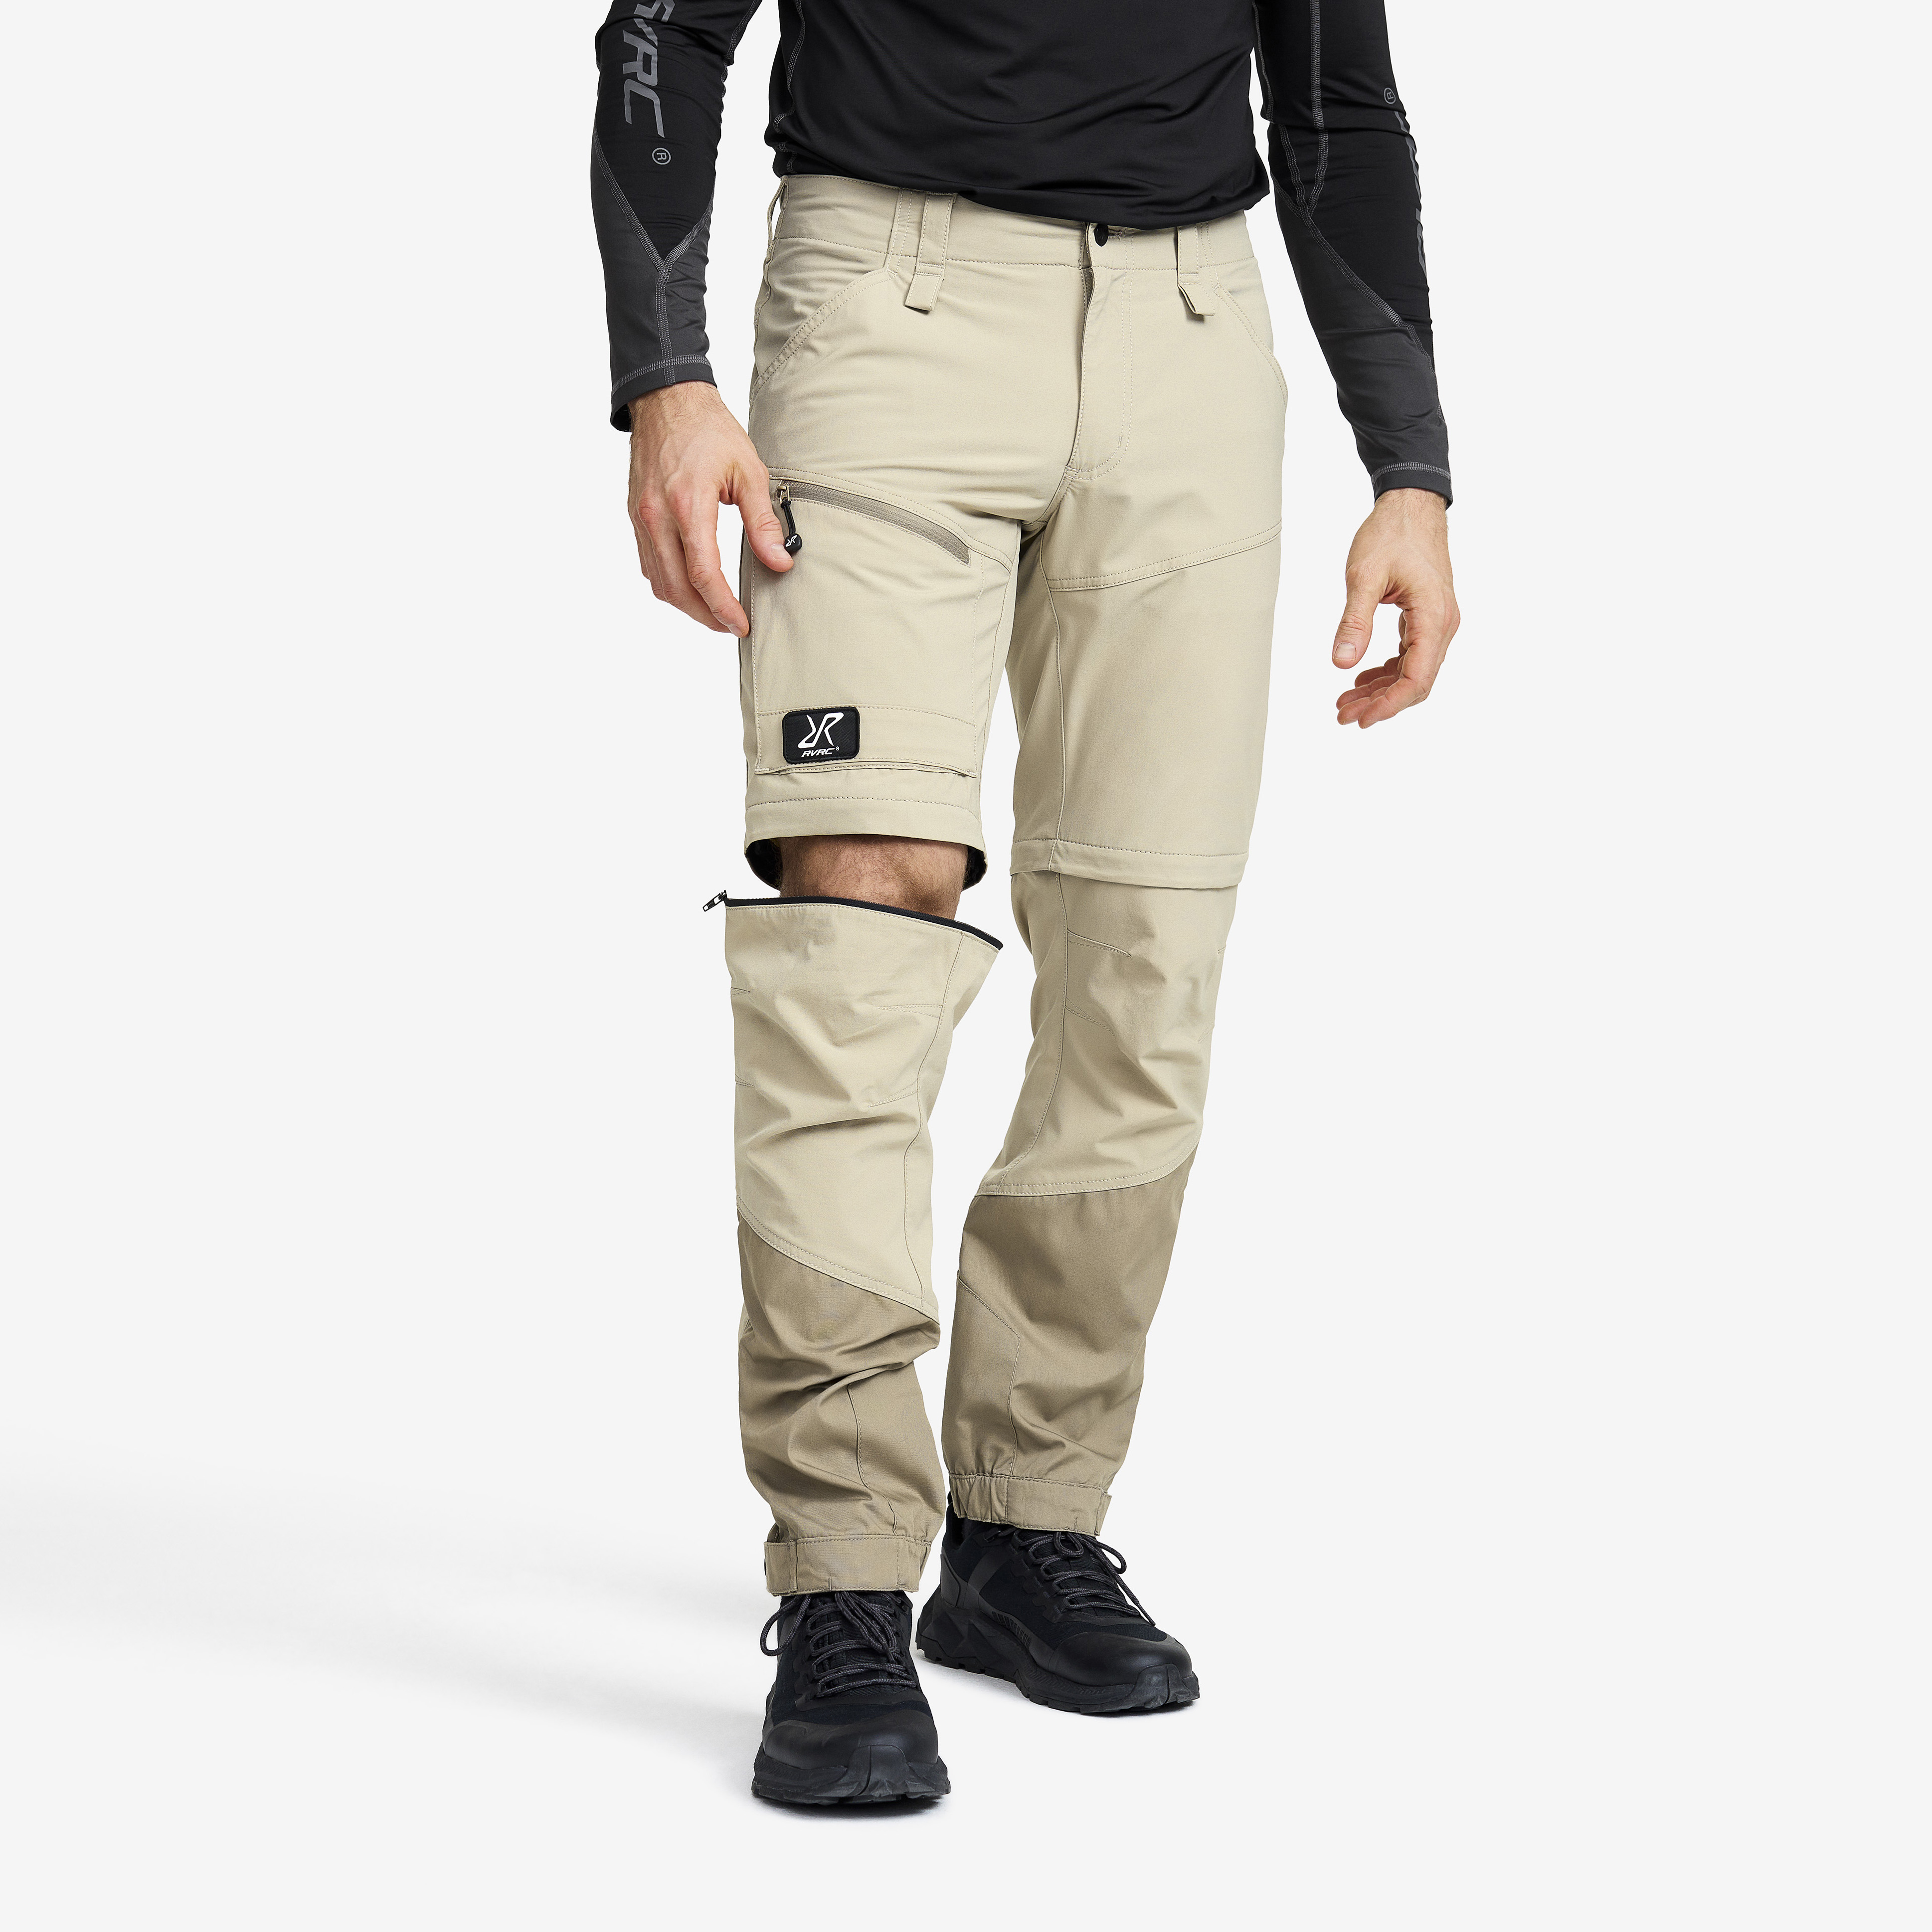 Range Pro Zip-off Pants Aluminium/Brindle Herren